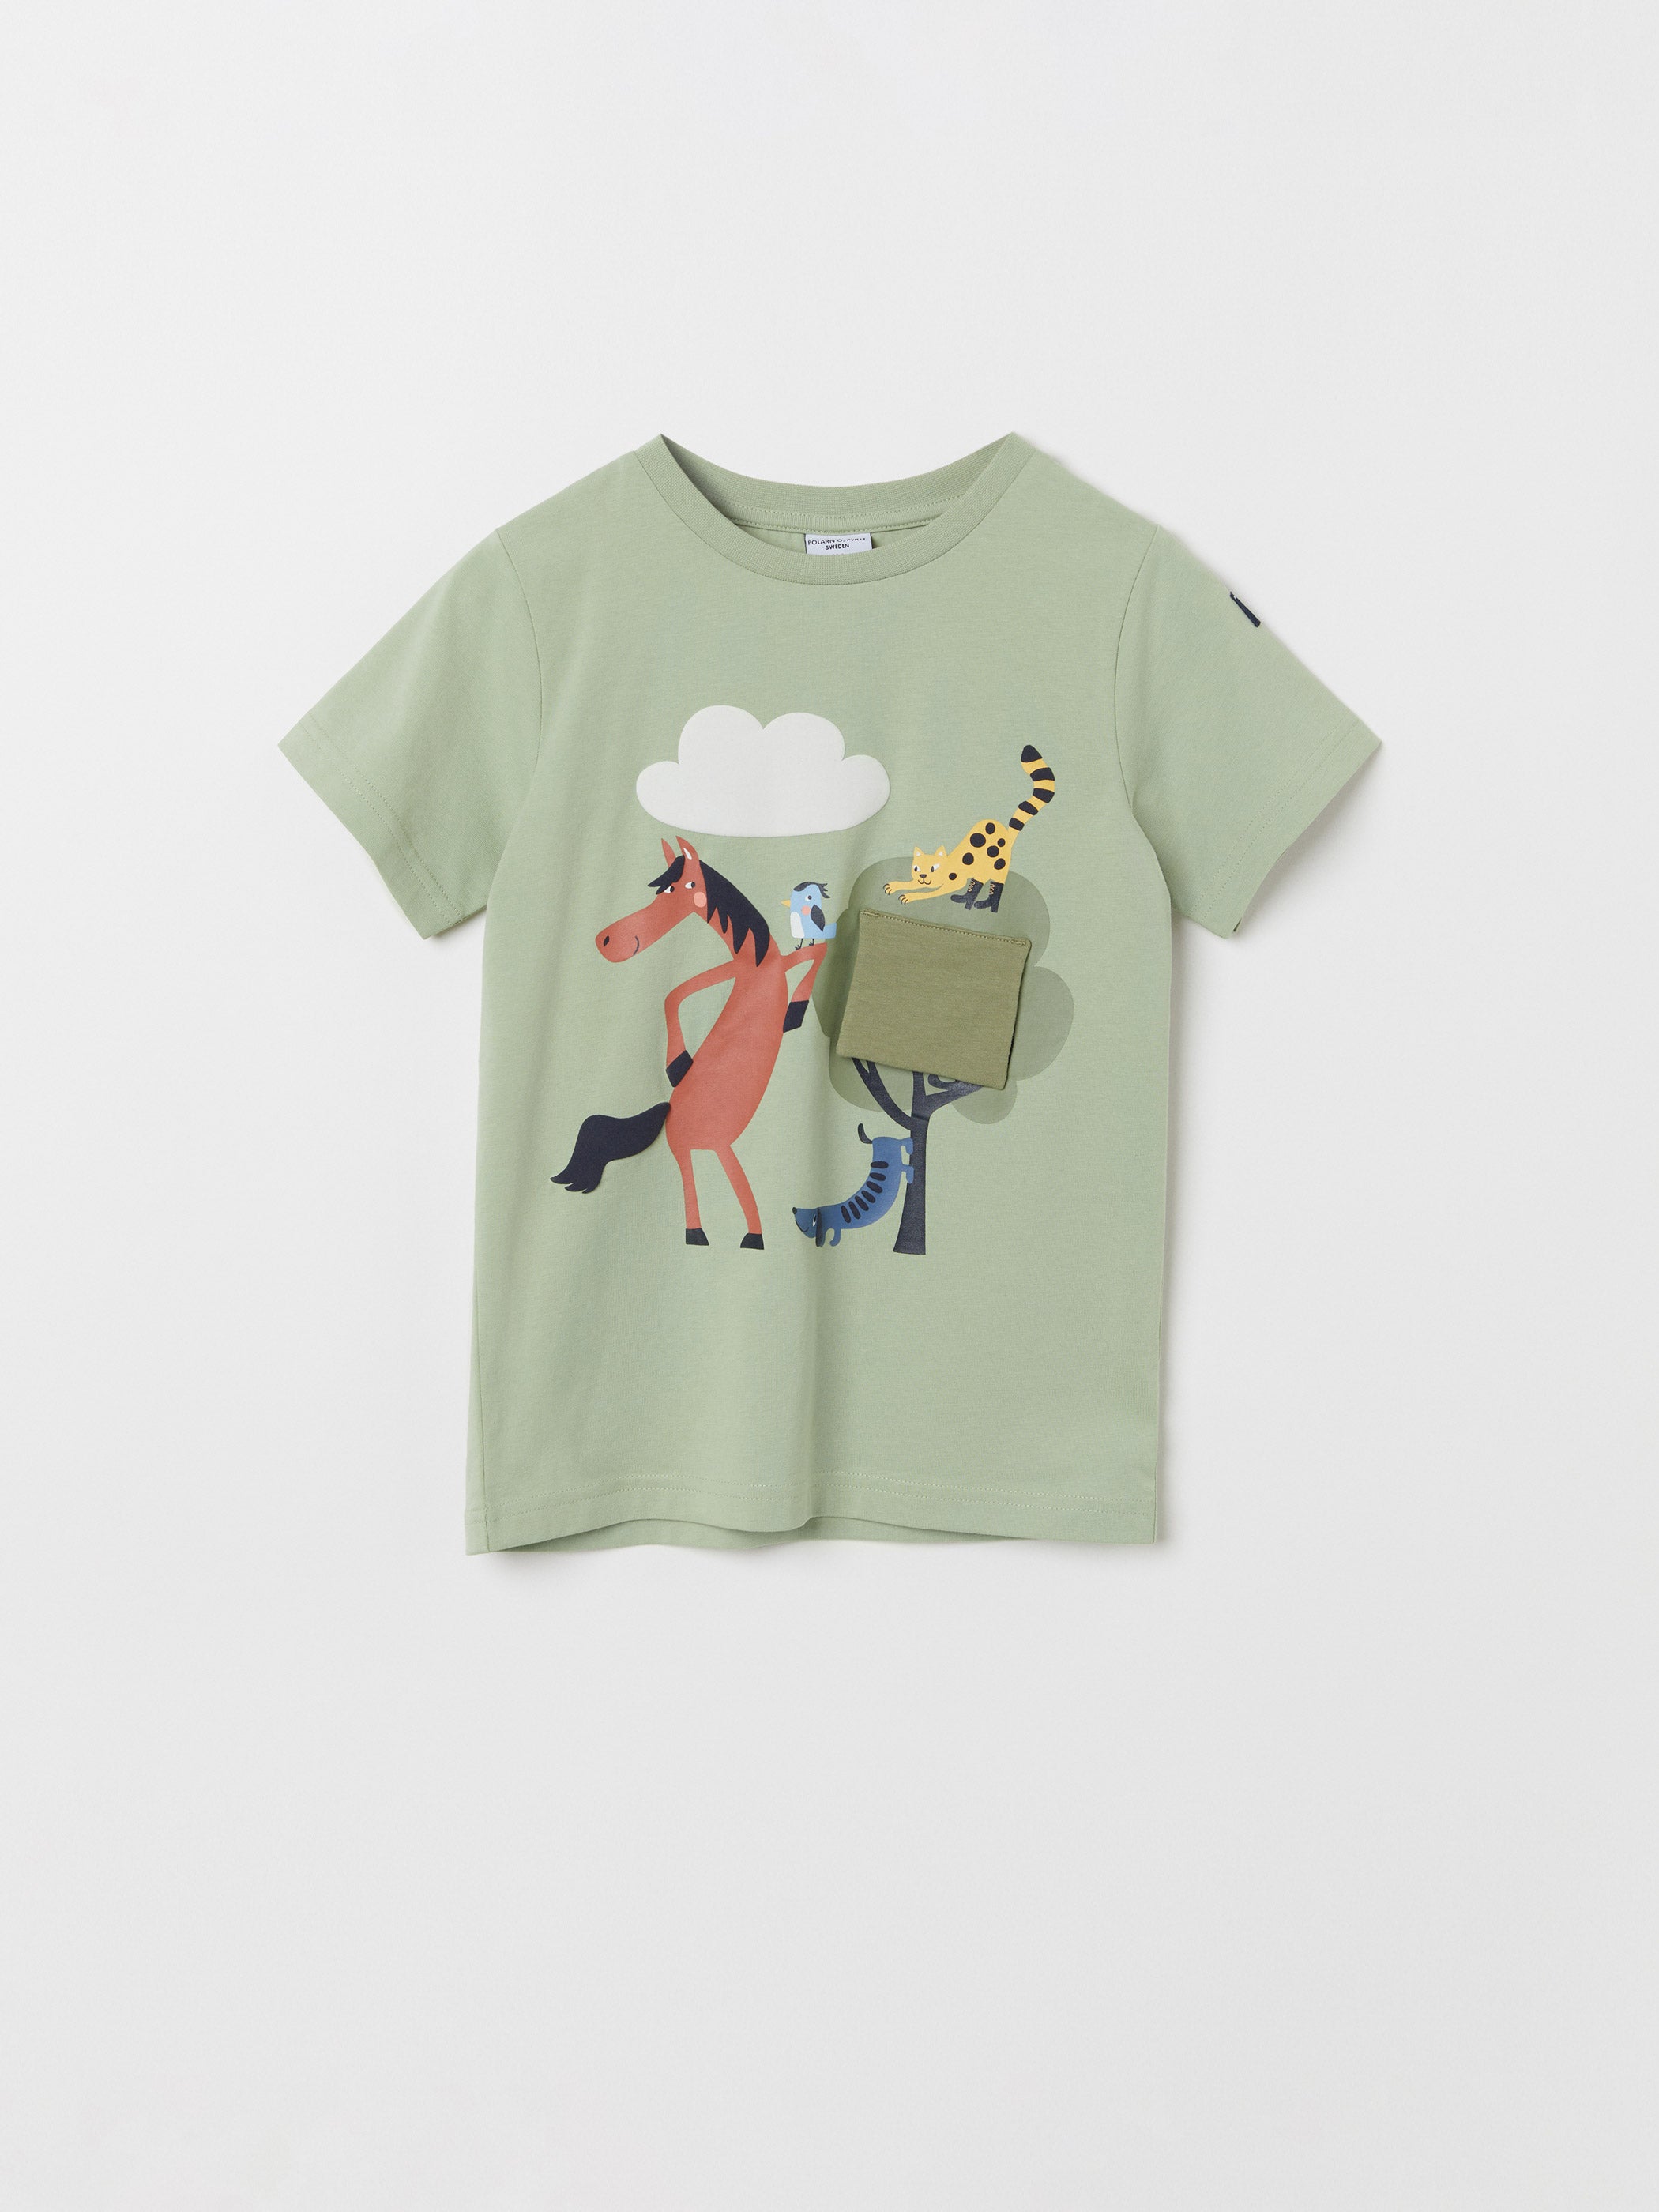 Animal Print Sage Green Kids T-Shirt | Polarn O. Pyret Ireland